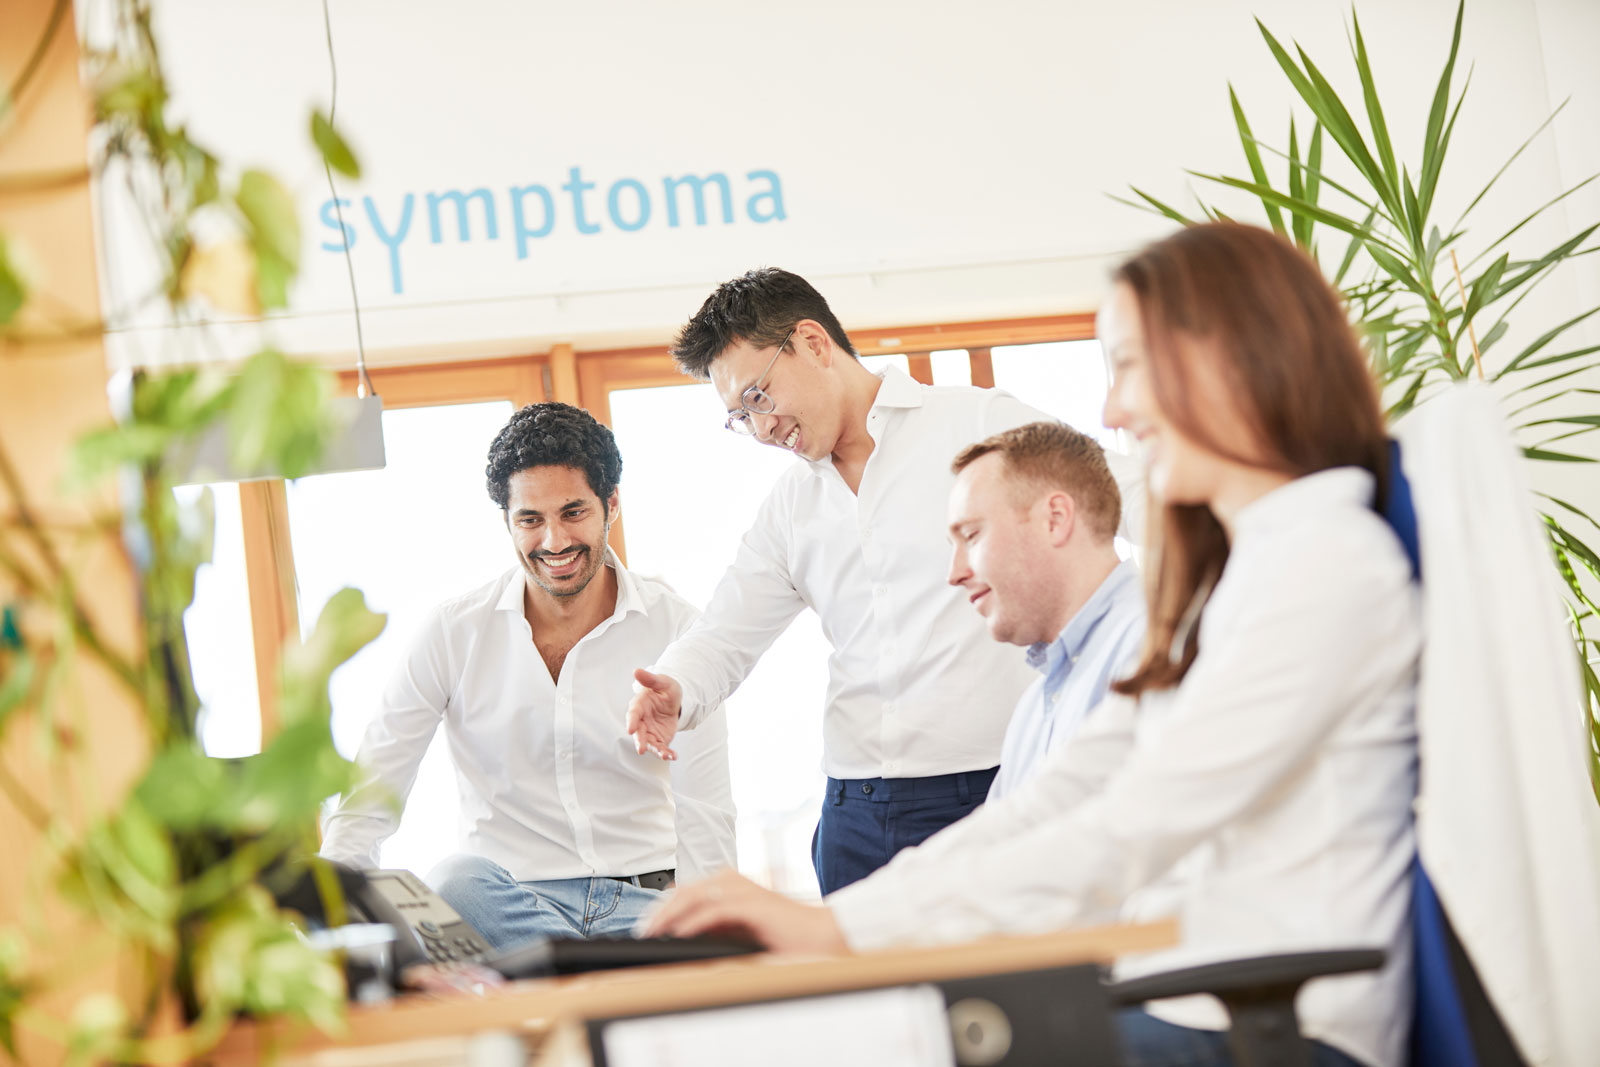 Die Symptoma-Gründer mit Mitarbeitern 